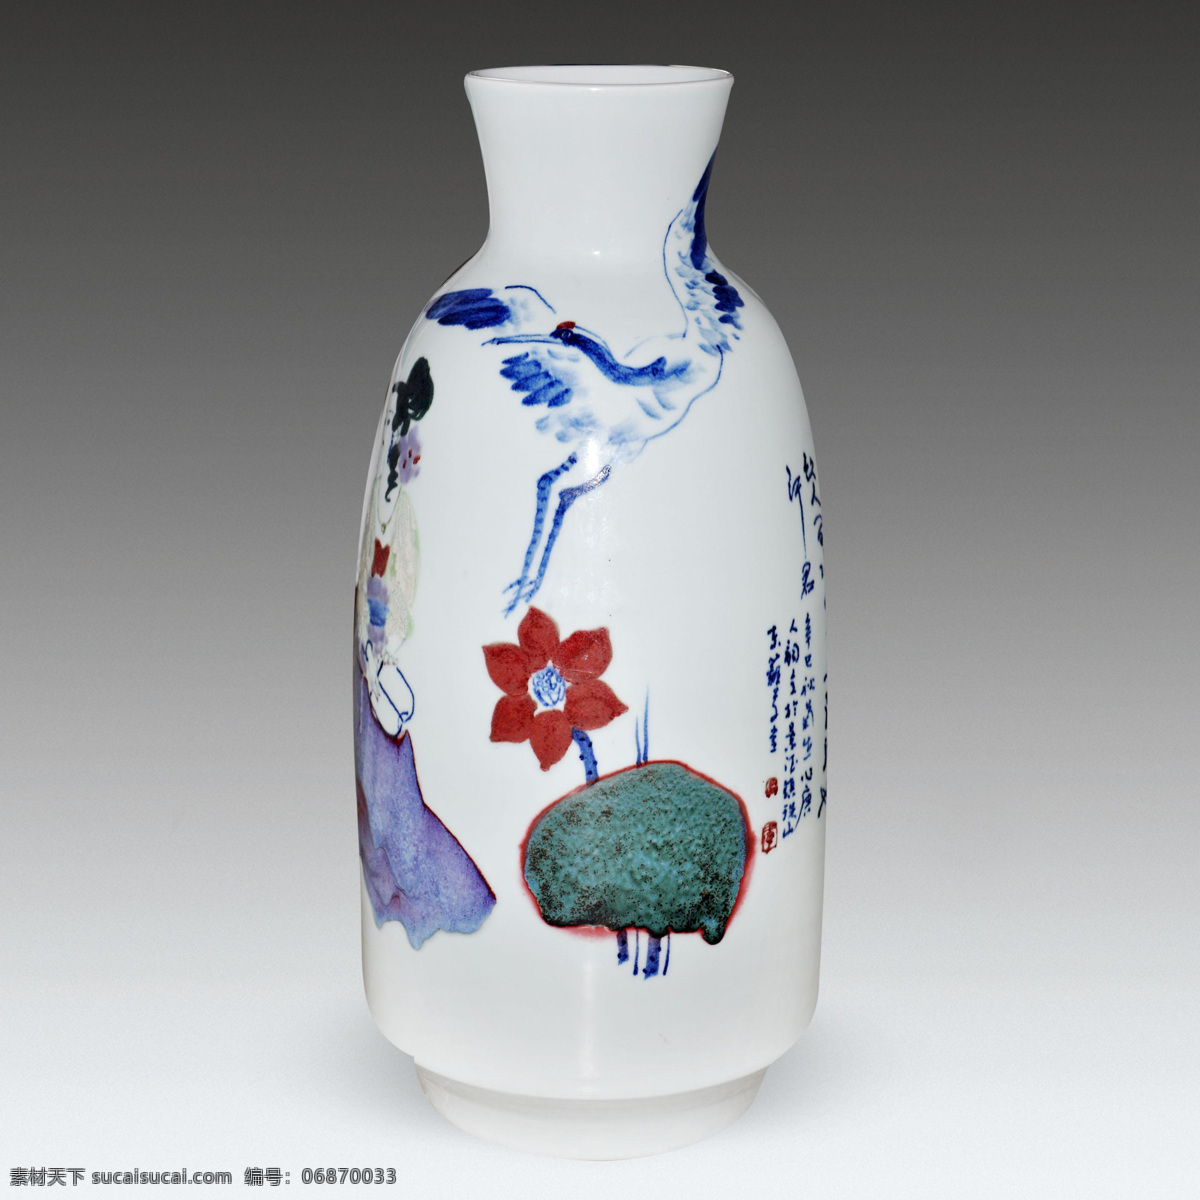 陶瓷 瓷器 瓷罐 彩色陶瓷 瓷瓶 仙鹤 荷花 文化艺术 传统文化